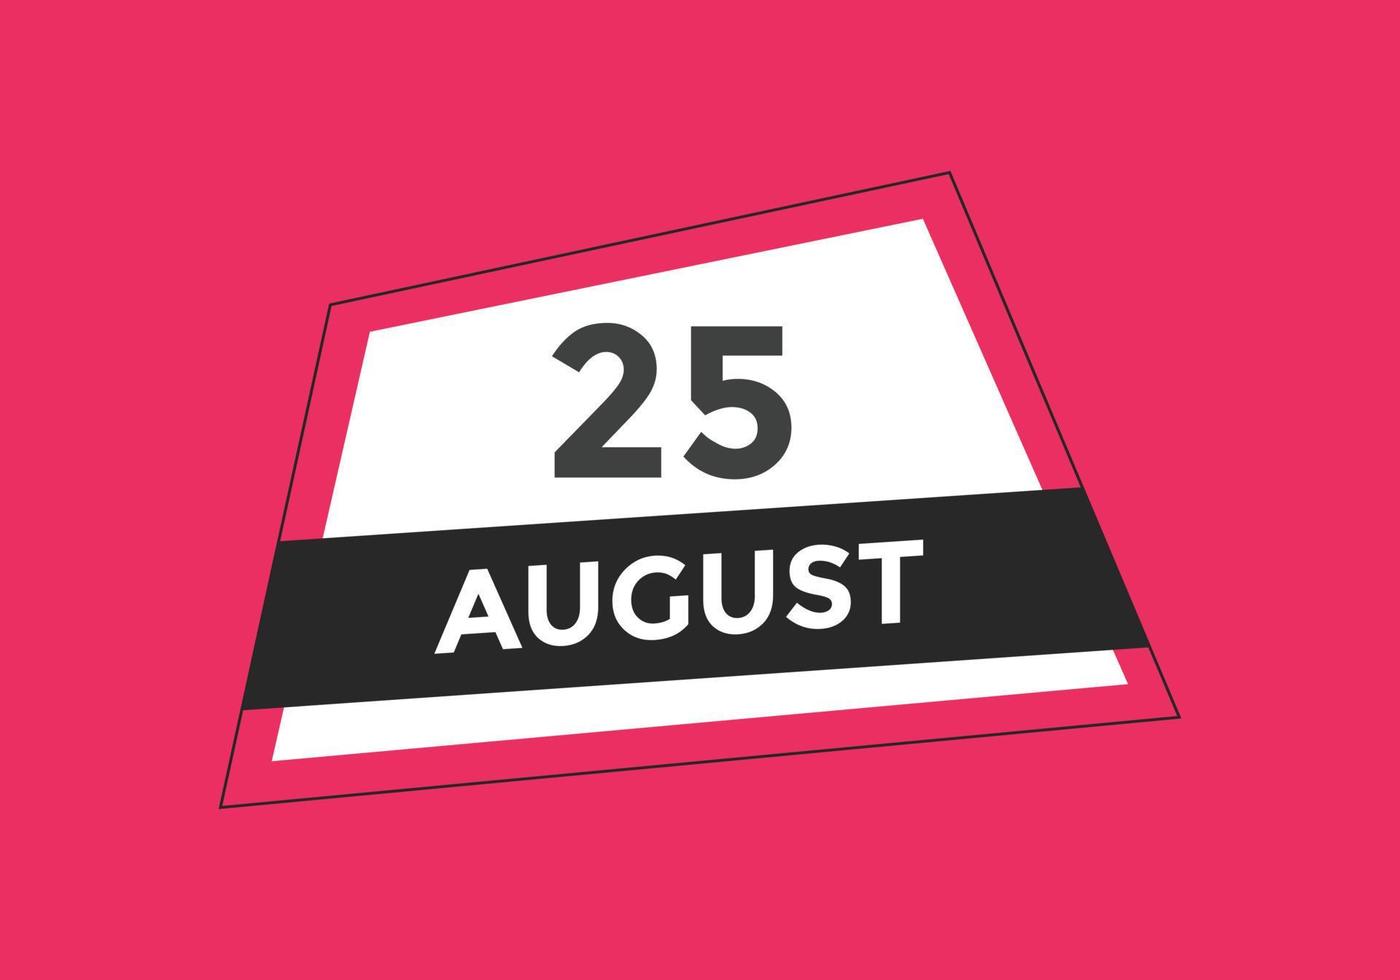 lembrete de calendário de 25 de agosto. Modelo de ícone de calendário diário de 25 de agosto. modelo de design de ícone de calendário 25 de agosto. ilustração vetorial vetor